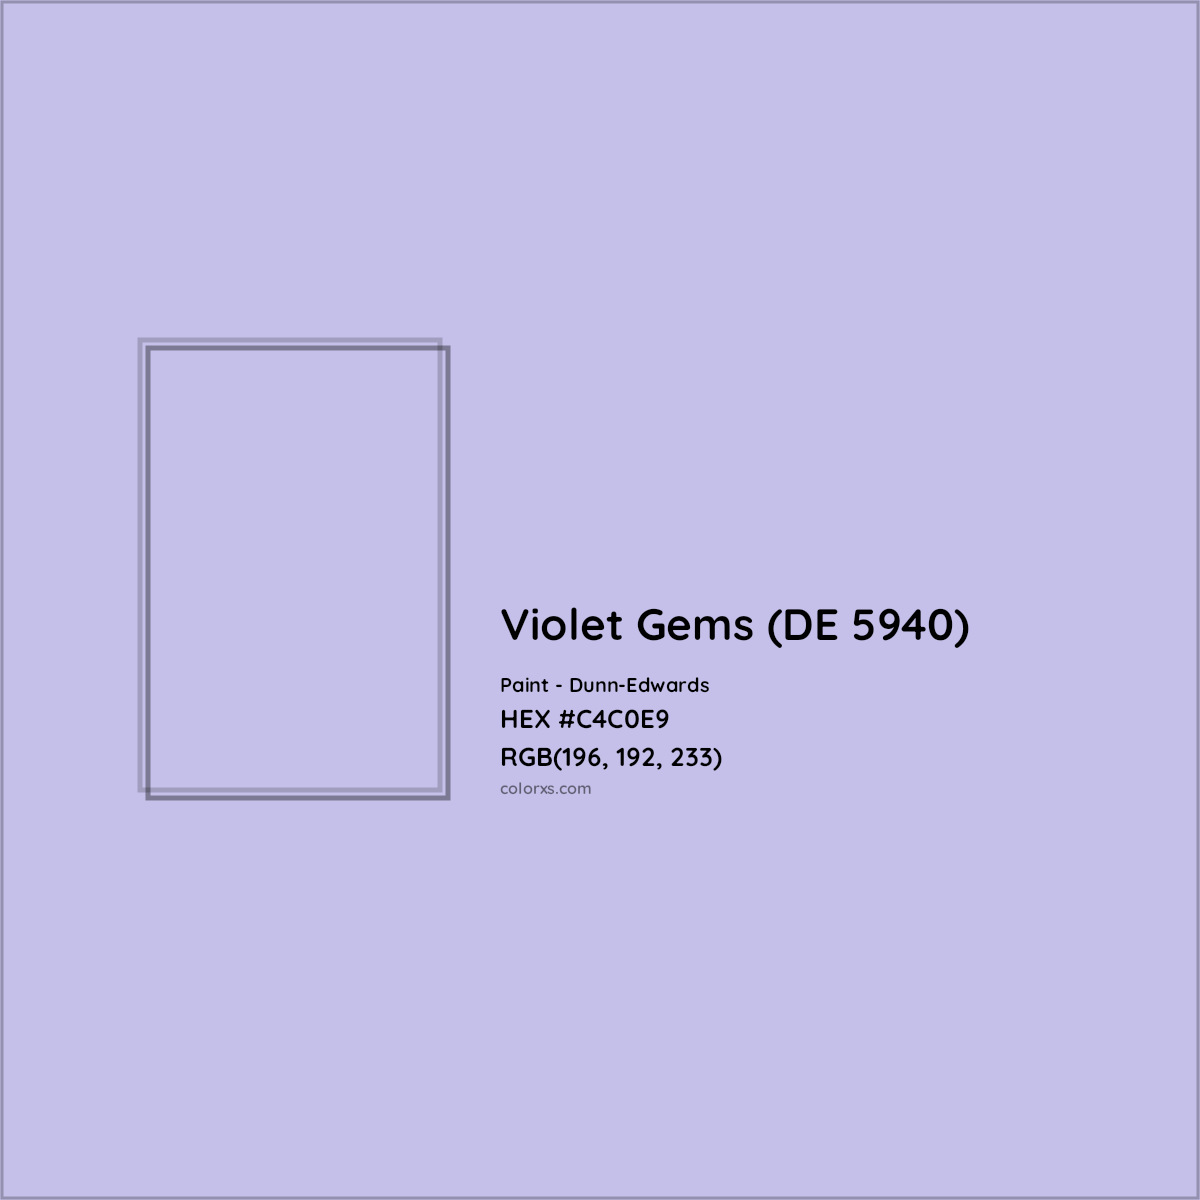 HEX #C4C0E9 Violet Gems (DE 5940) Paint Dunn-Edwards - Color Code